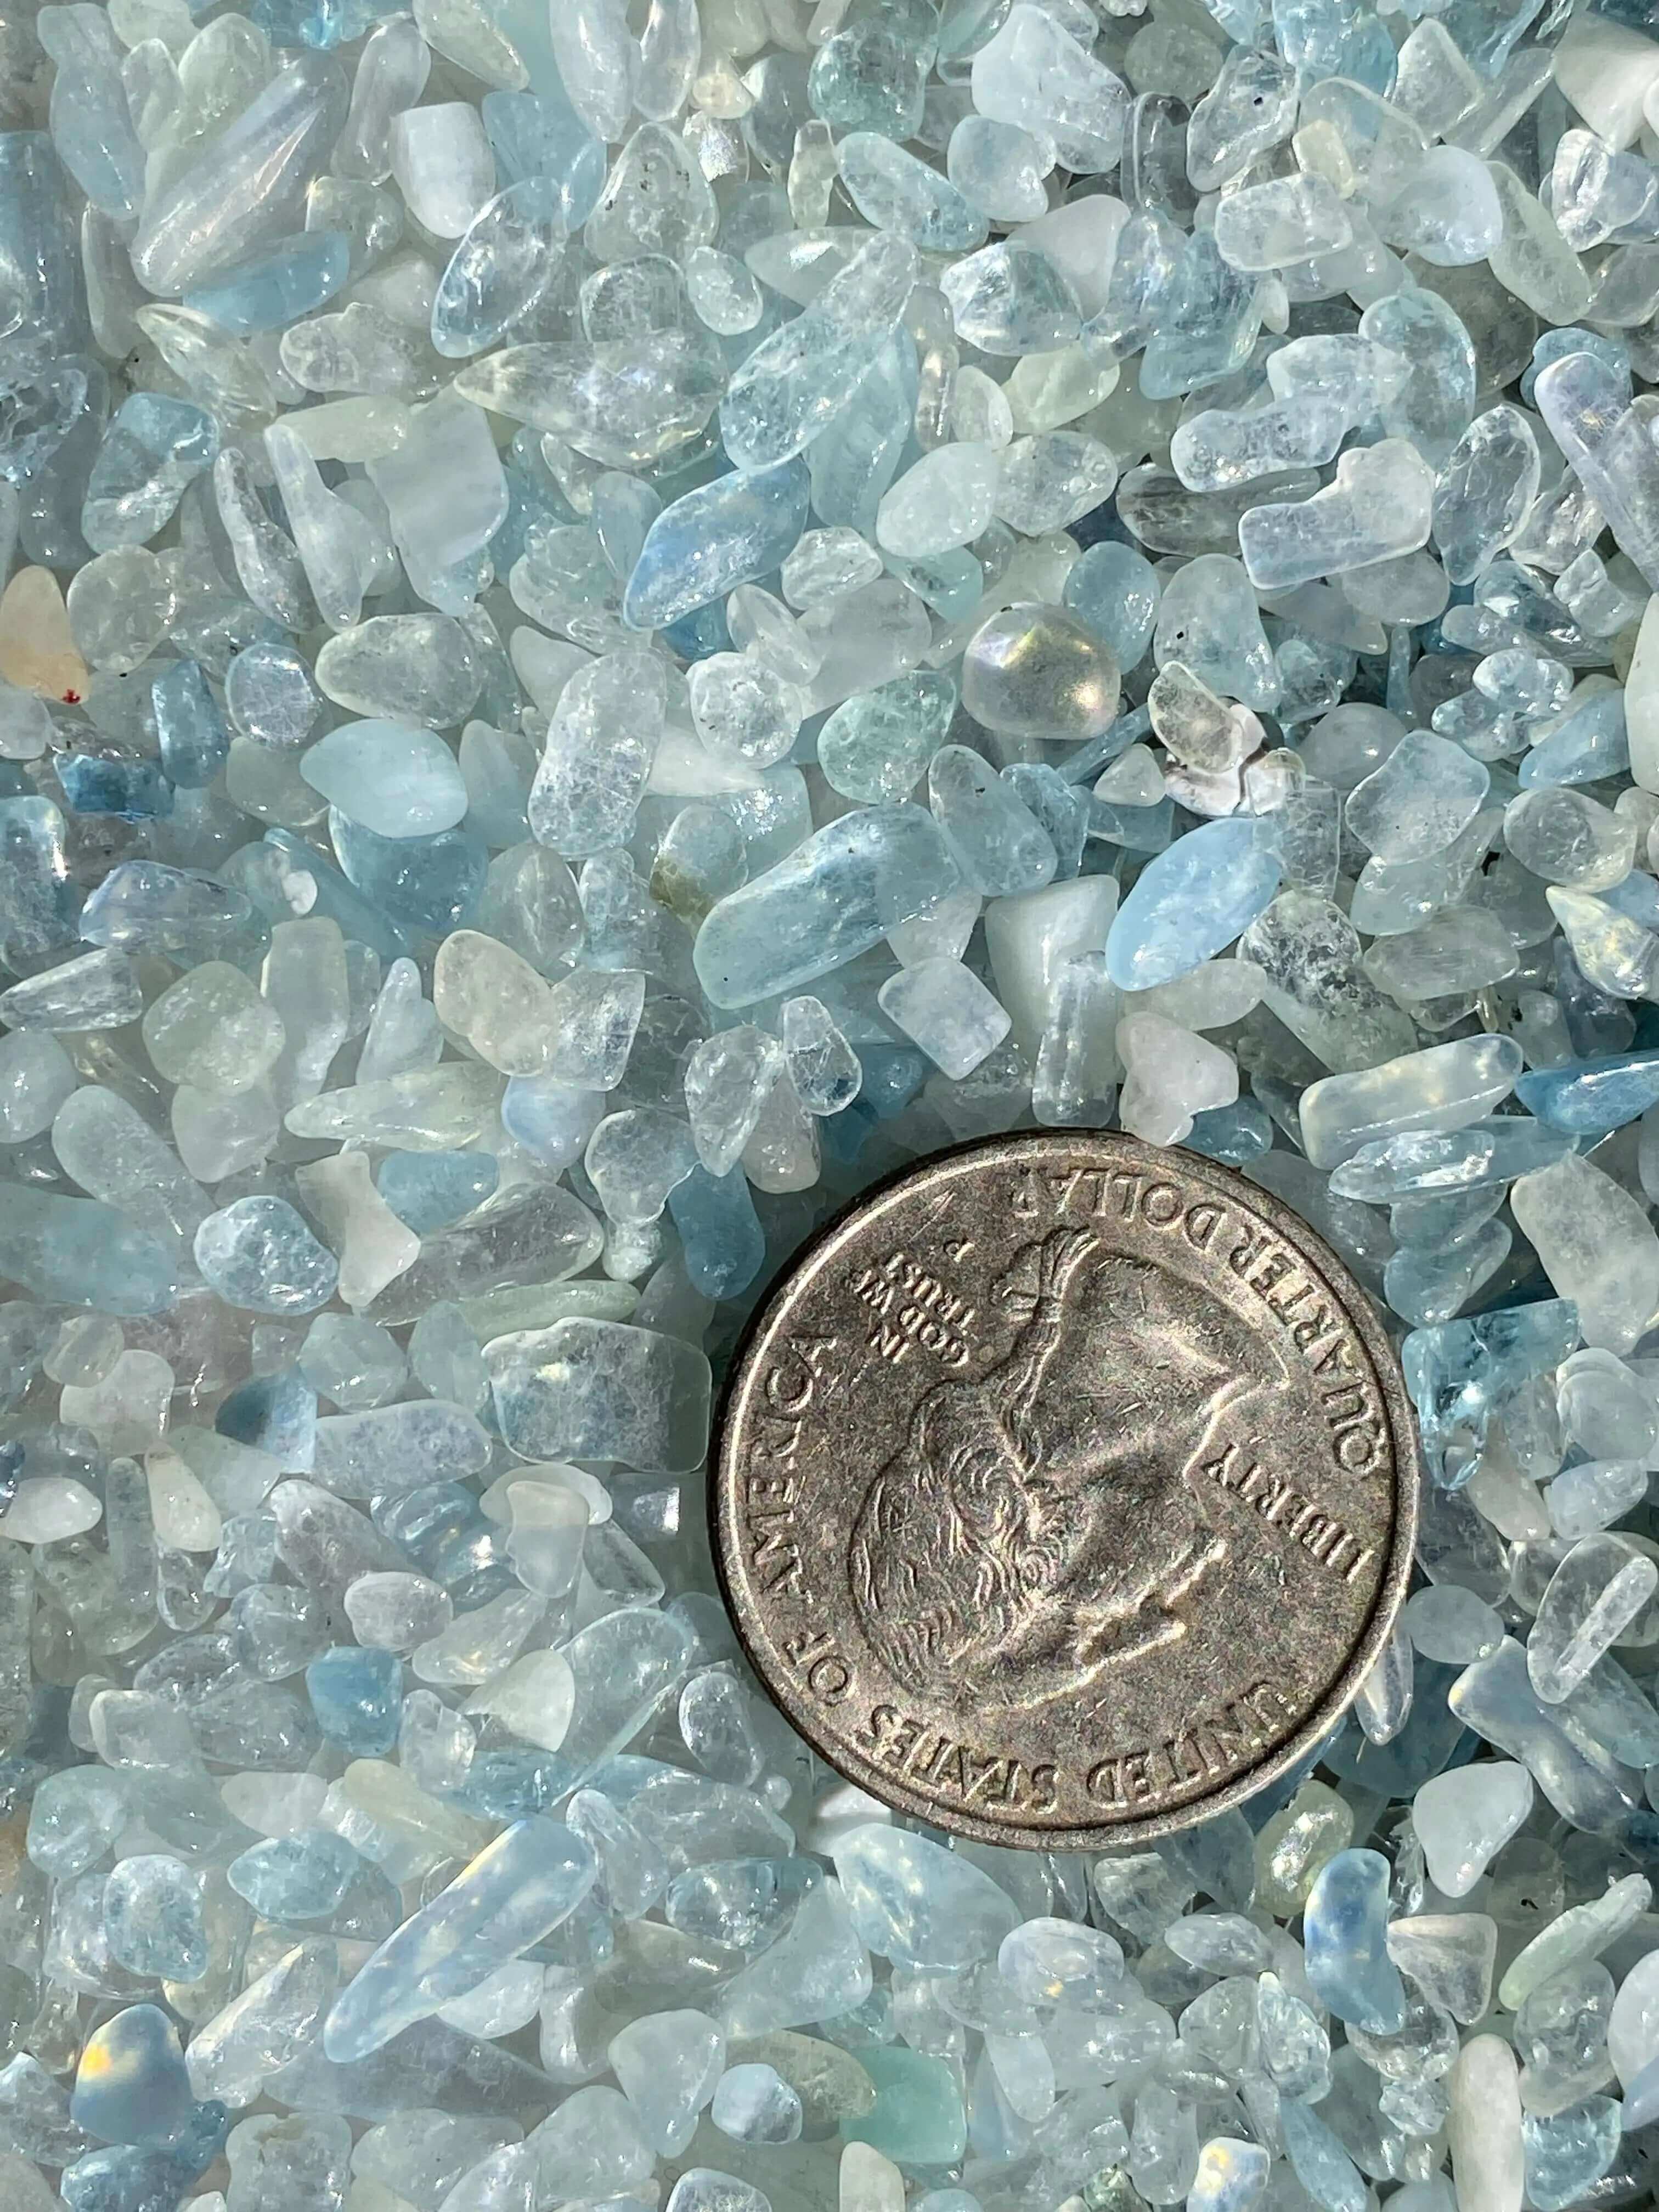 Mini Aquamarine Tumbles | Lot of 100 Grams Mooncat Crystals